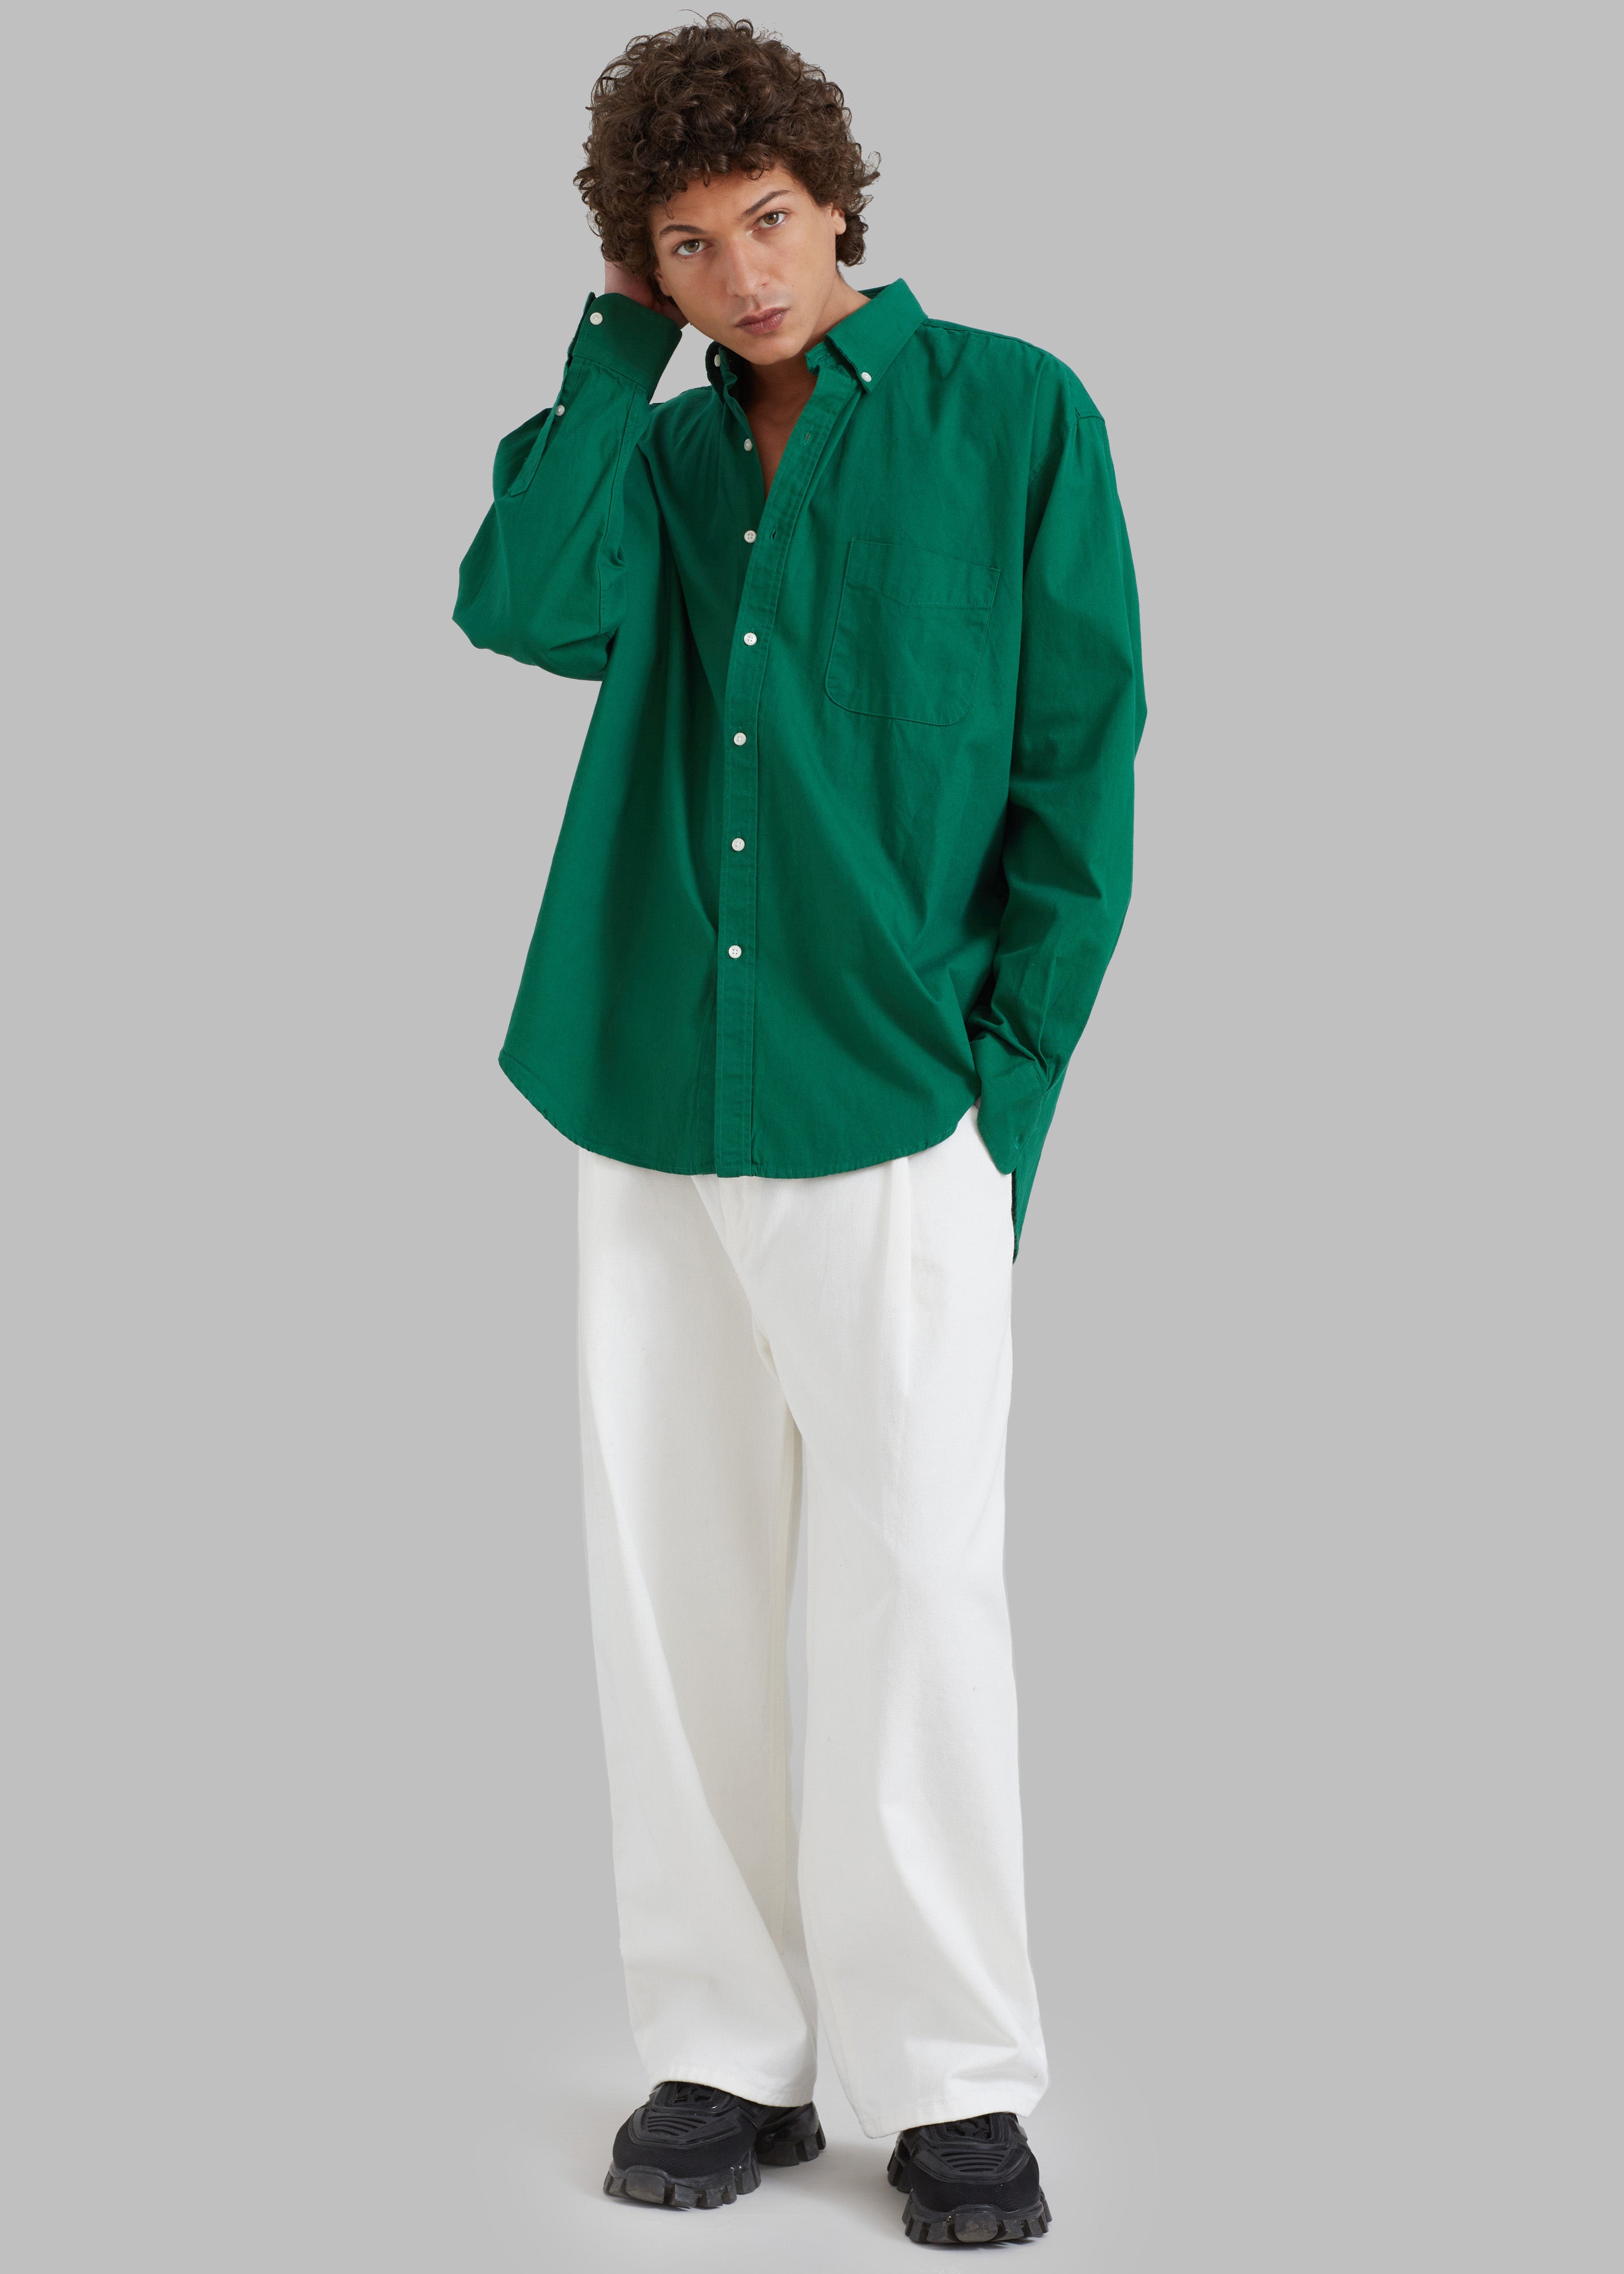 Sinclair Shirt - Green – The Frankie Shop